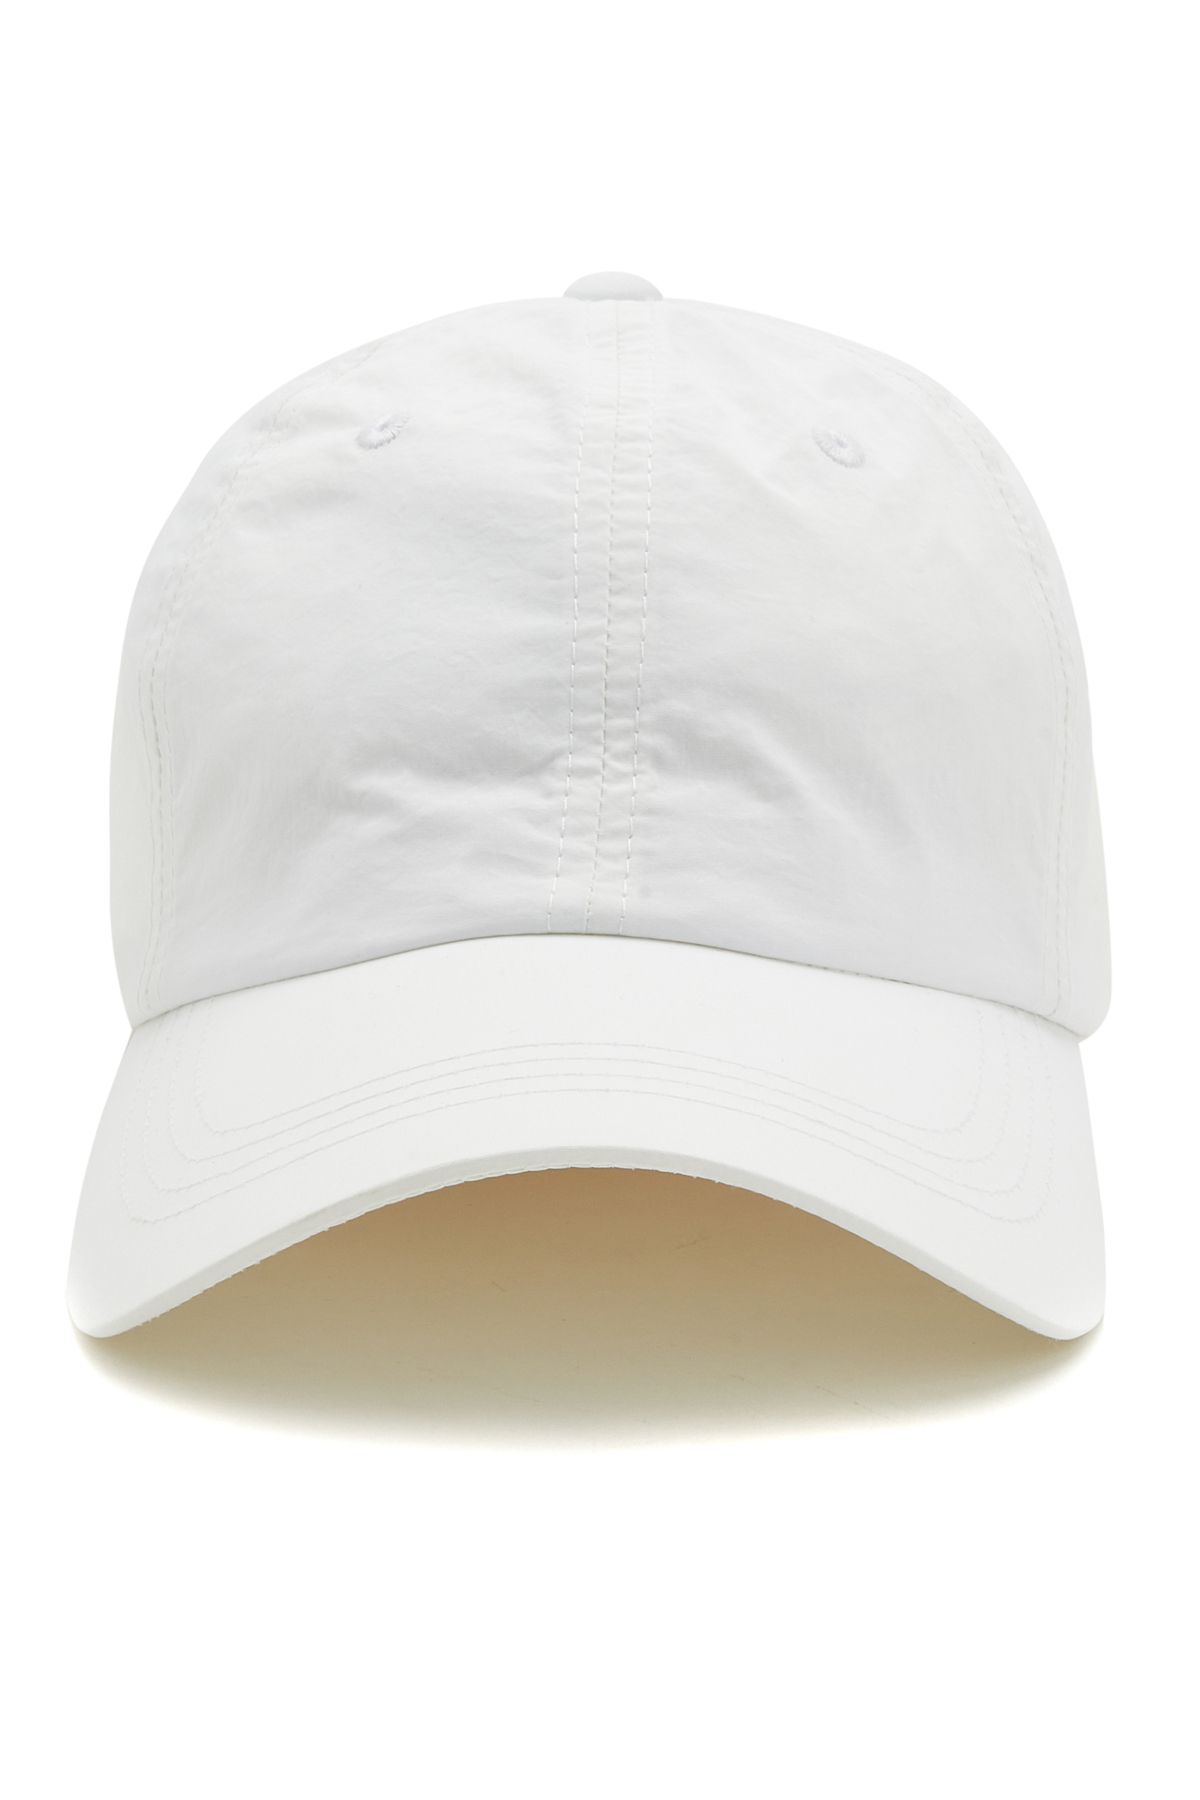 Network Beyaz Erkek Şapka